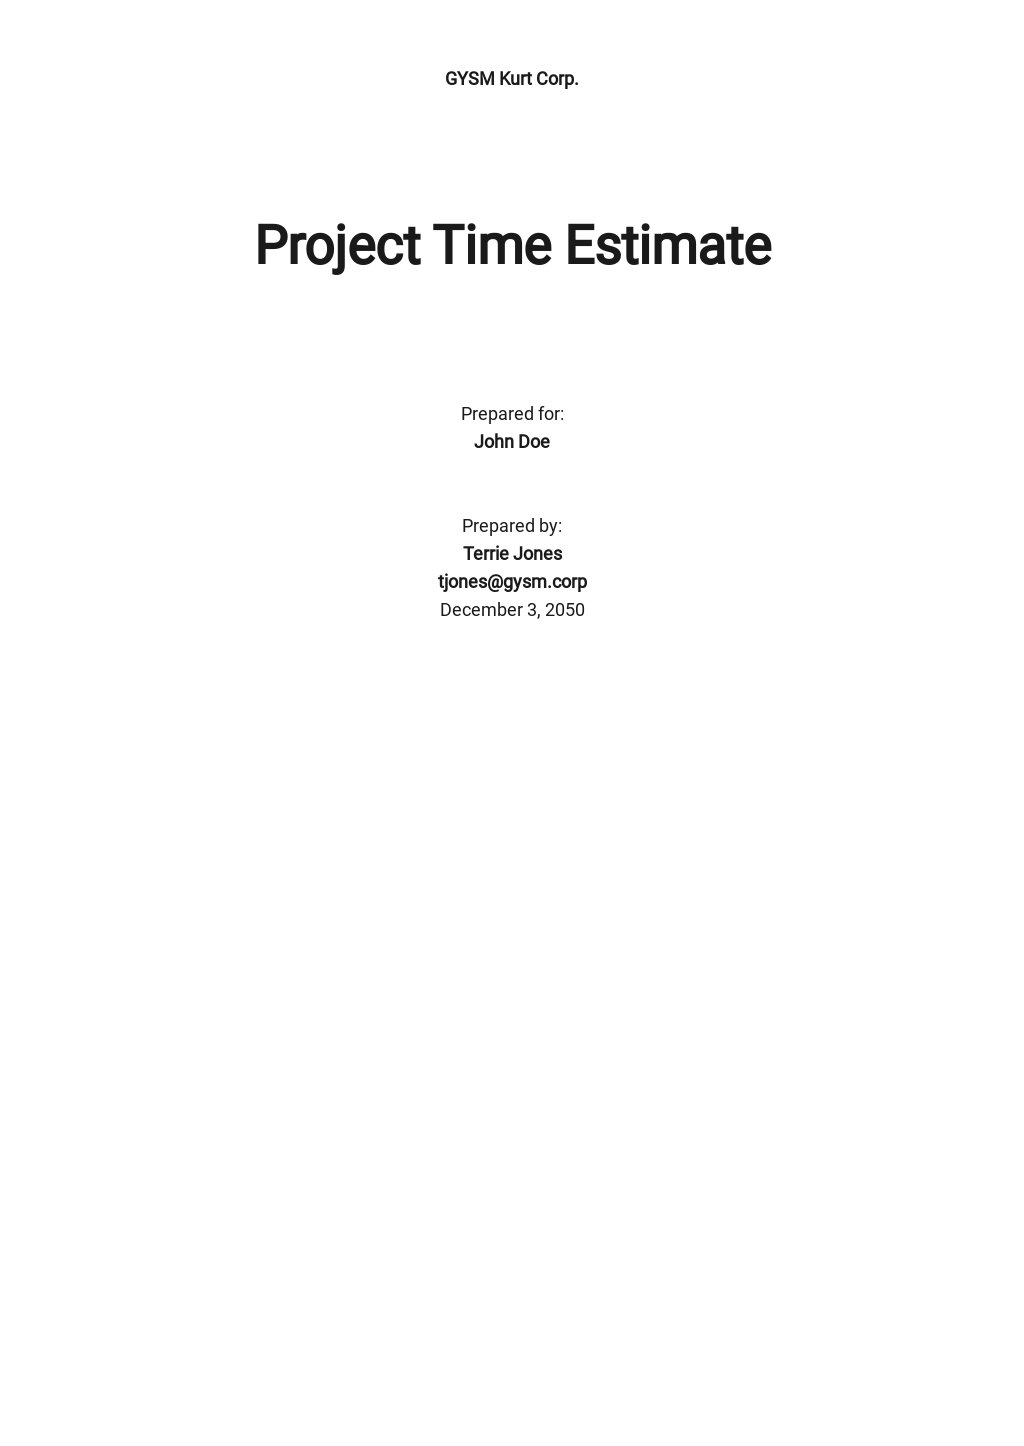 Project Time Estimate Template.jpe